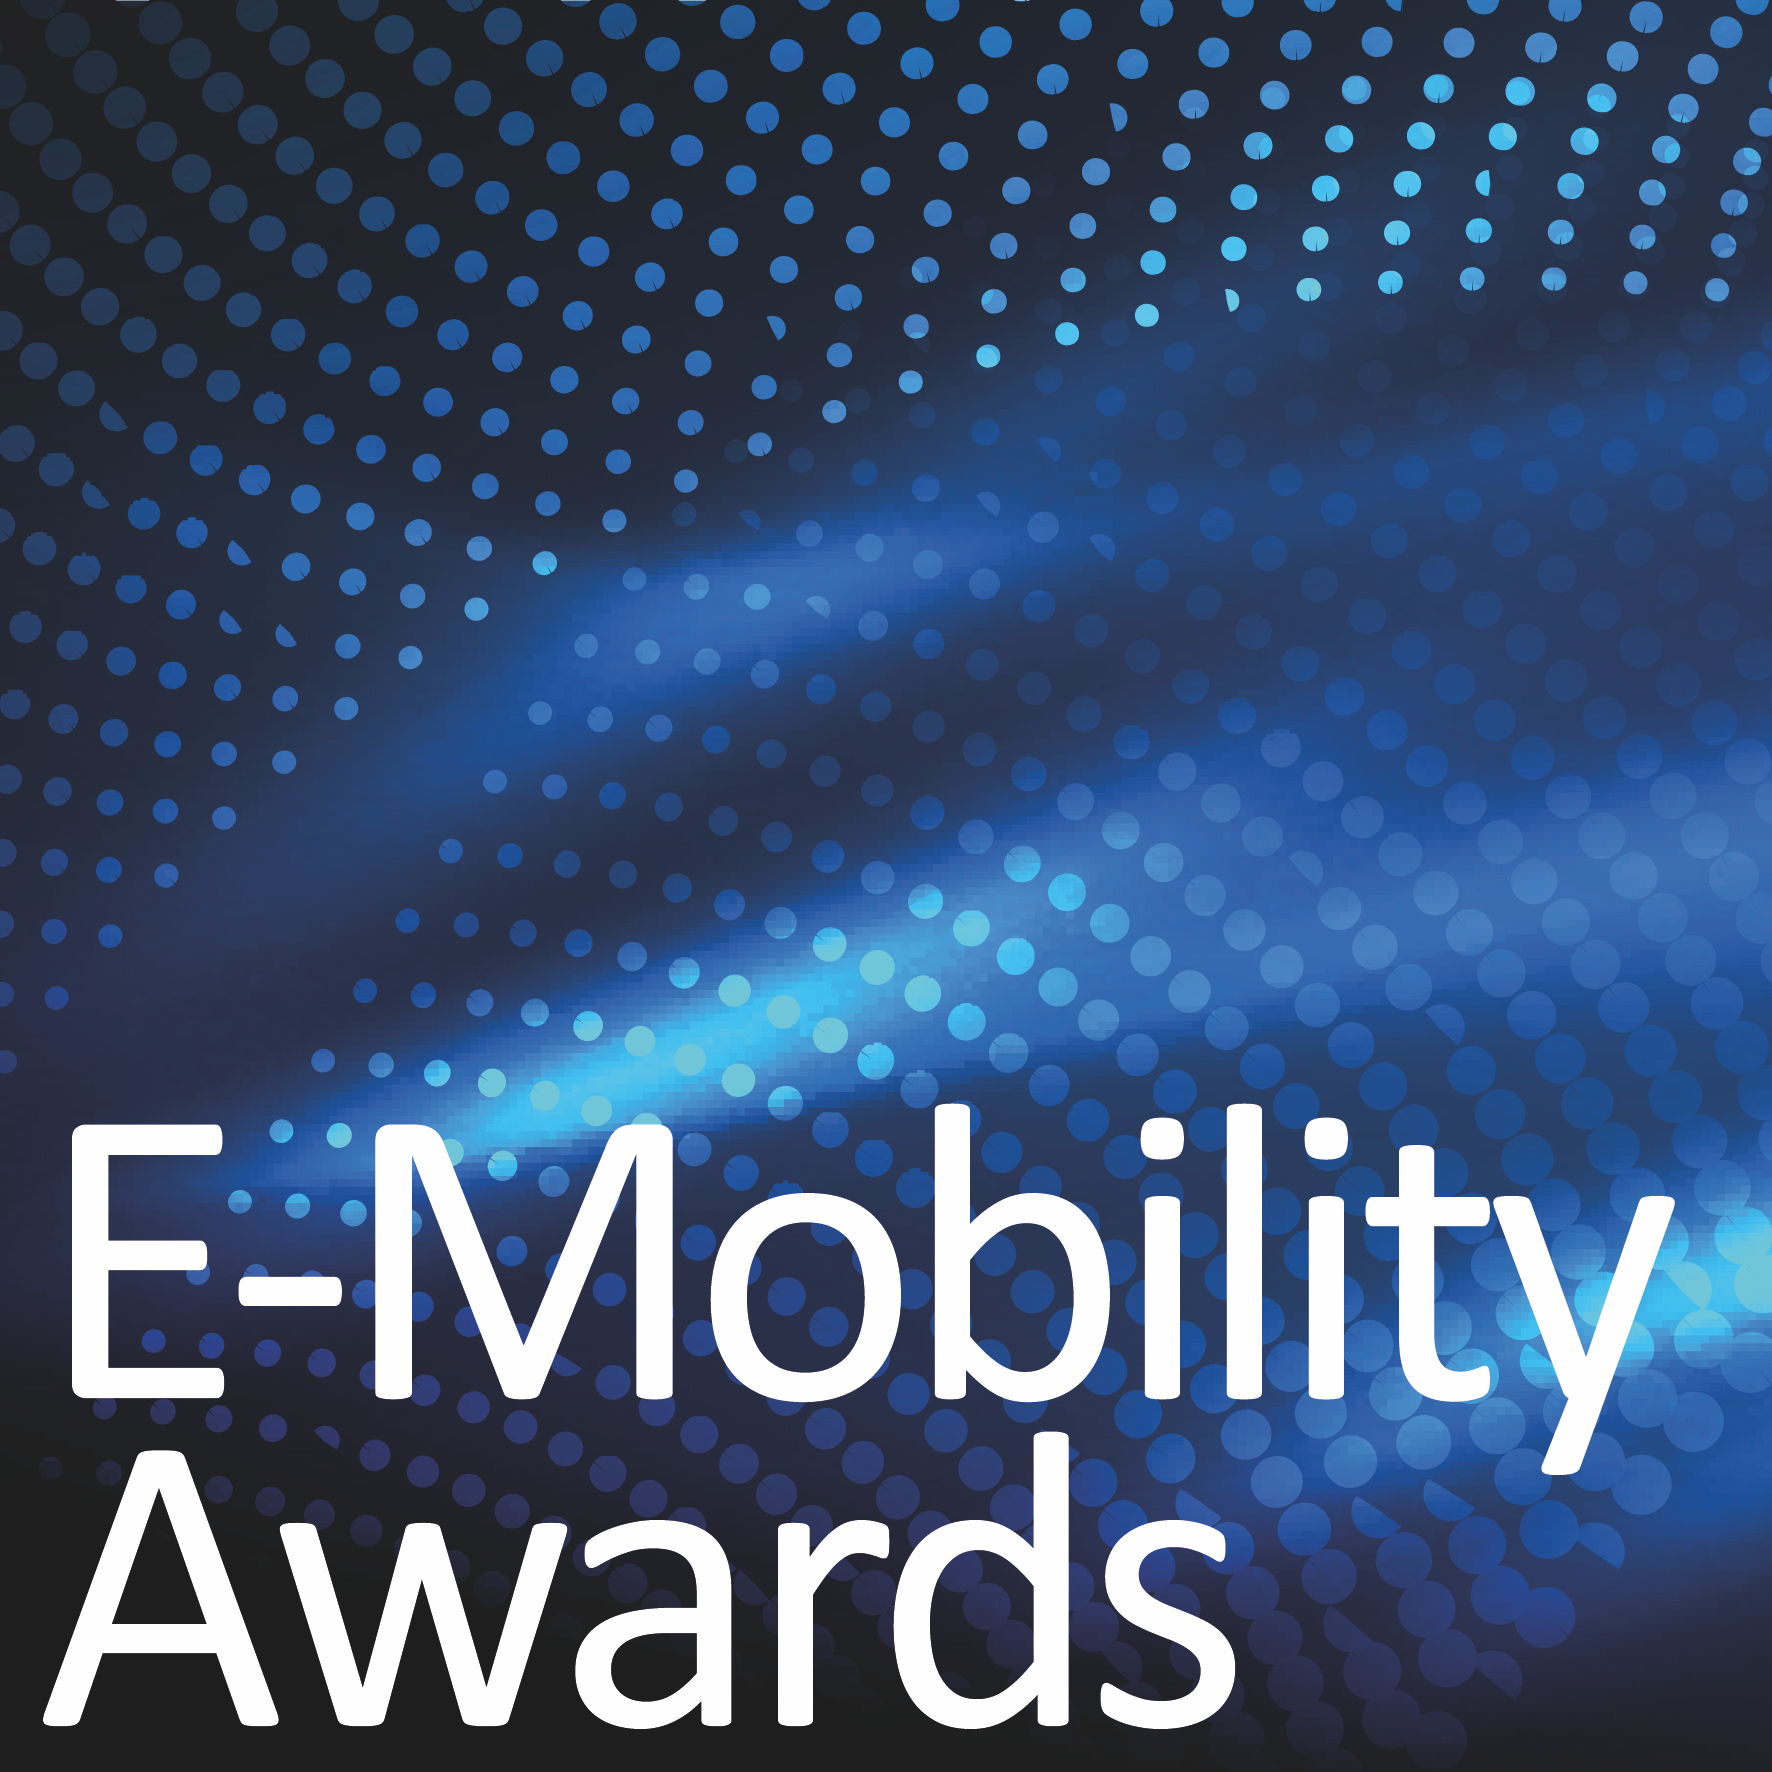 E-mobility awards